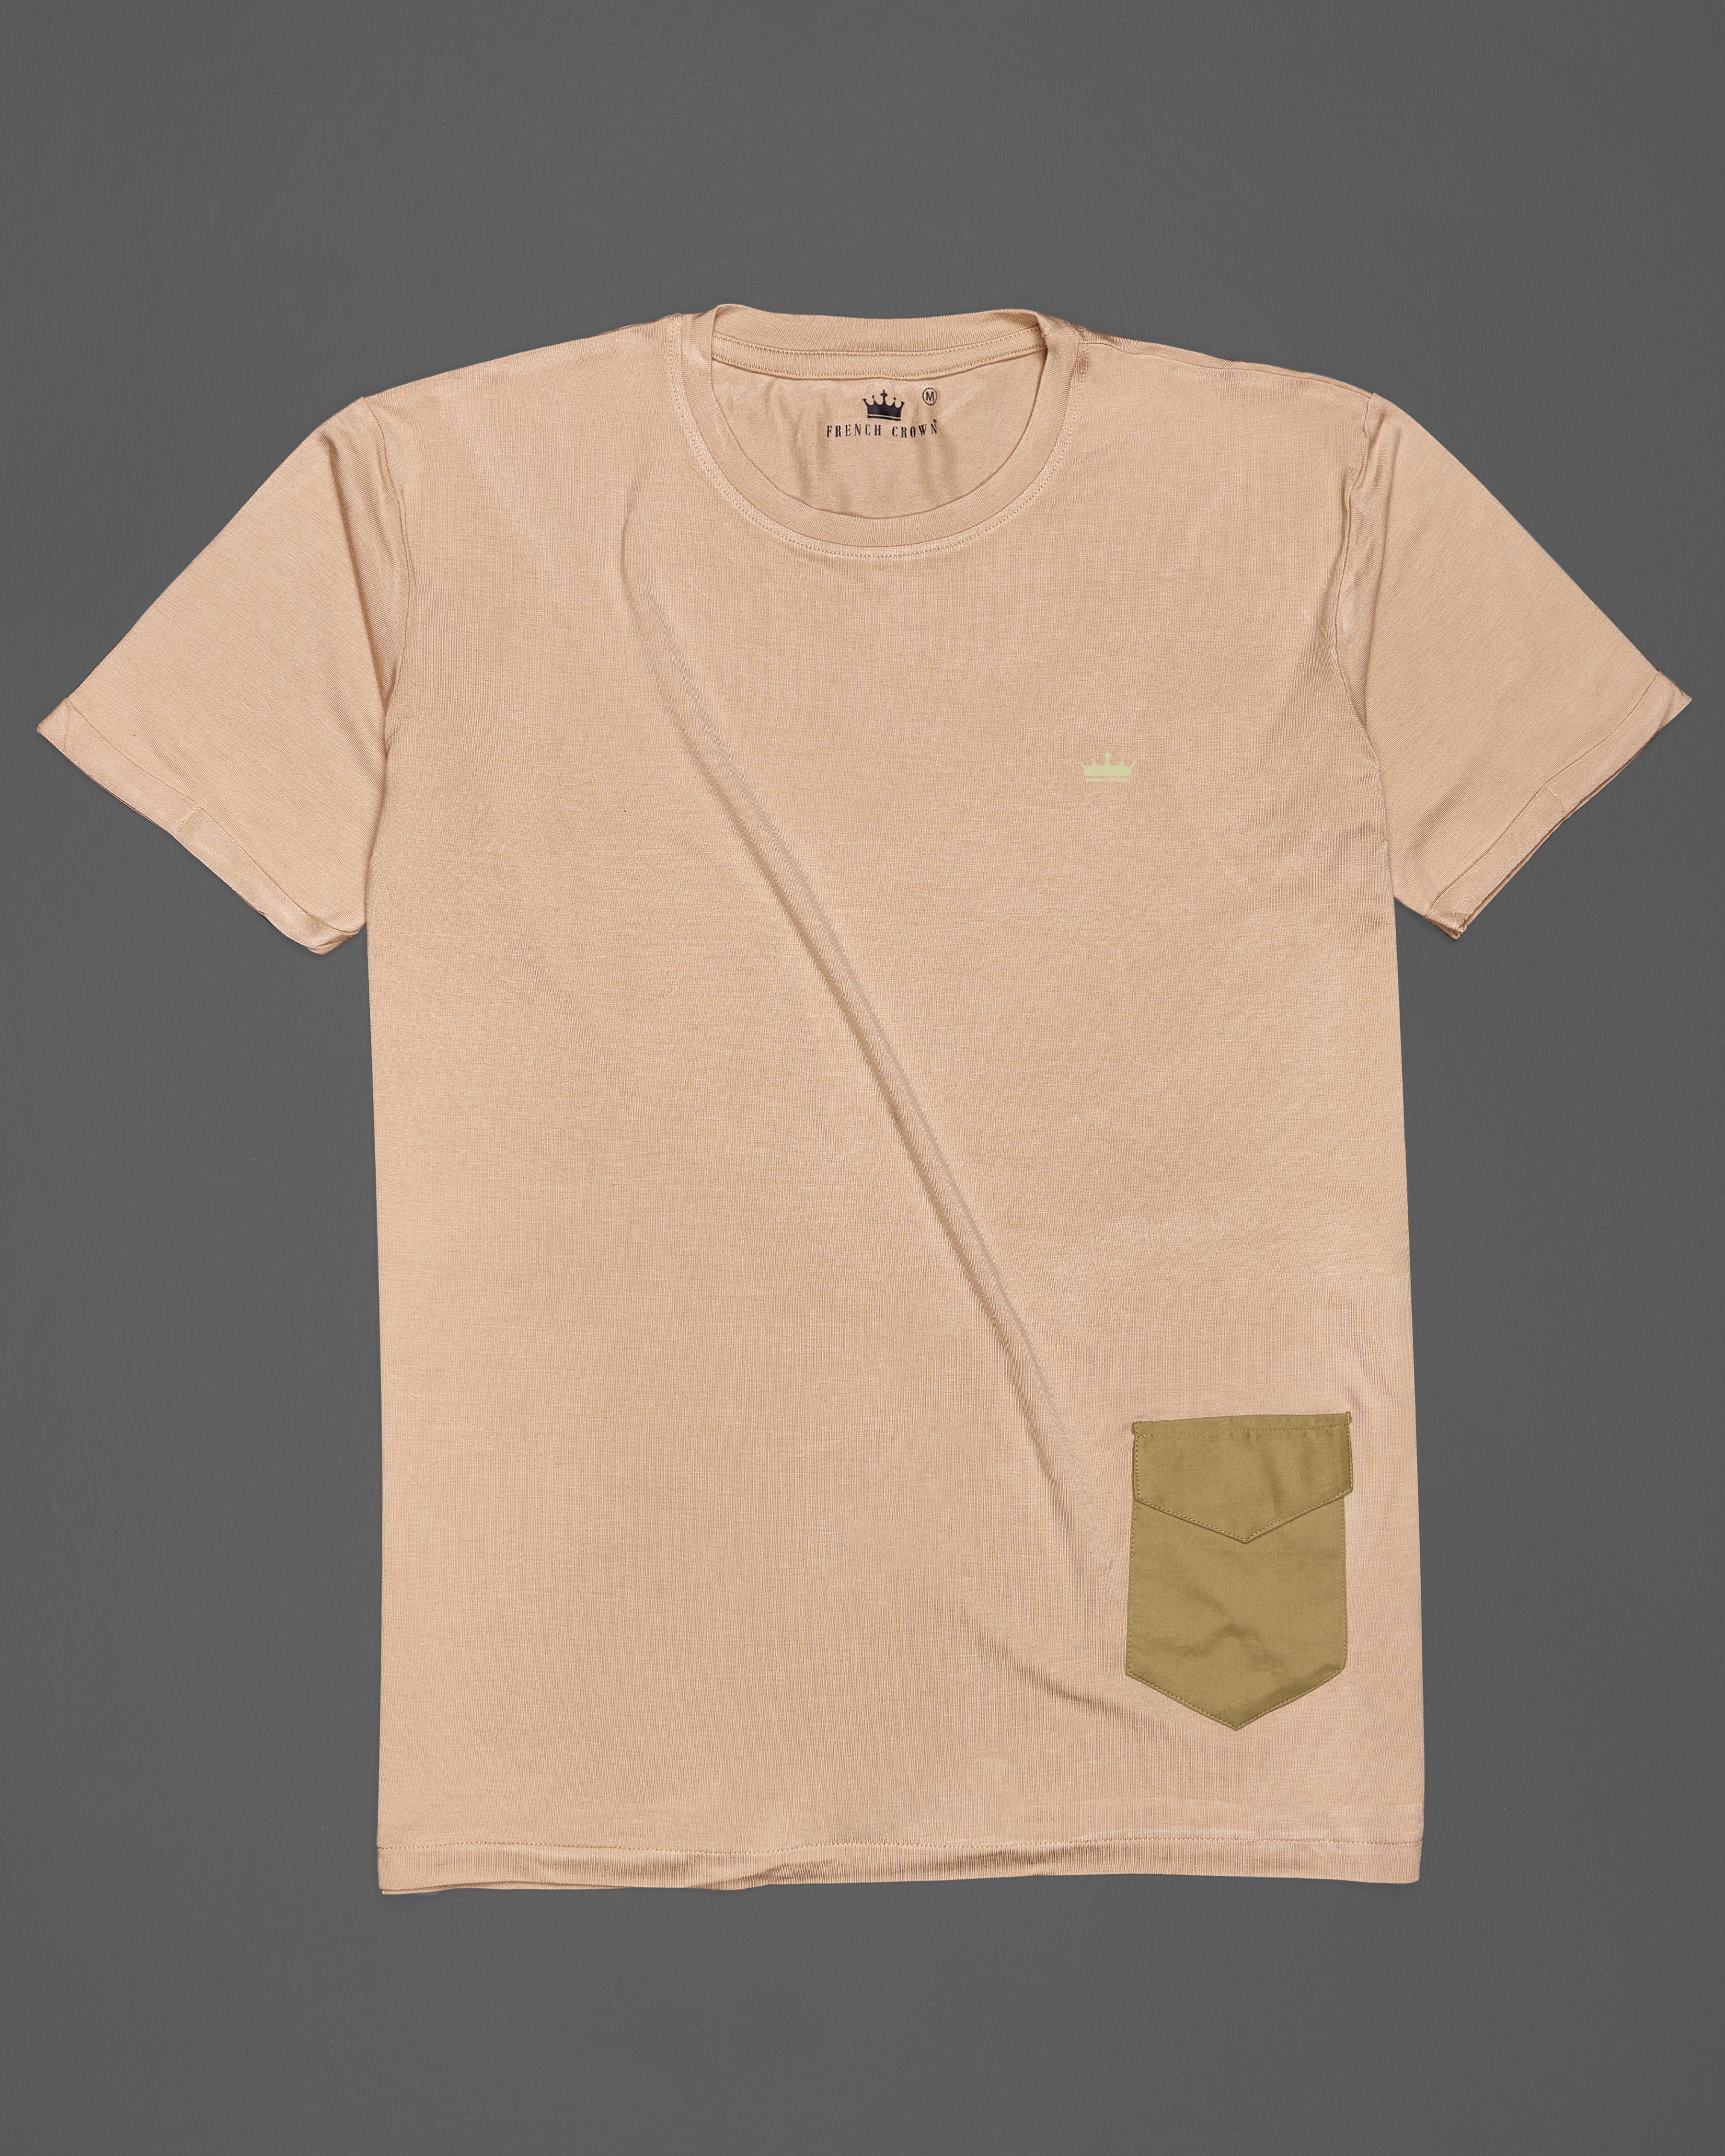 Cashmere Brown With Patch Pocket Premium Cotton Designer T-shirt TS340-W01-S, TS340-W01-M, TS340-W01-L, TS340-W01-XL, TS340-W01-XXL